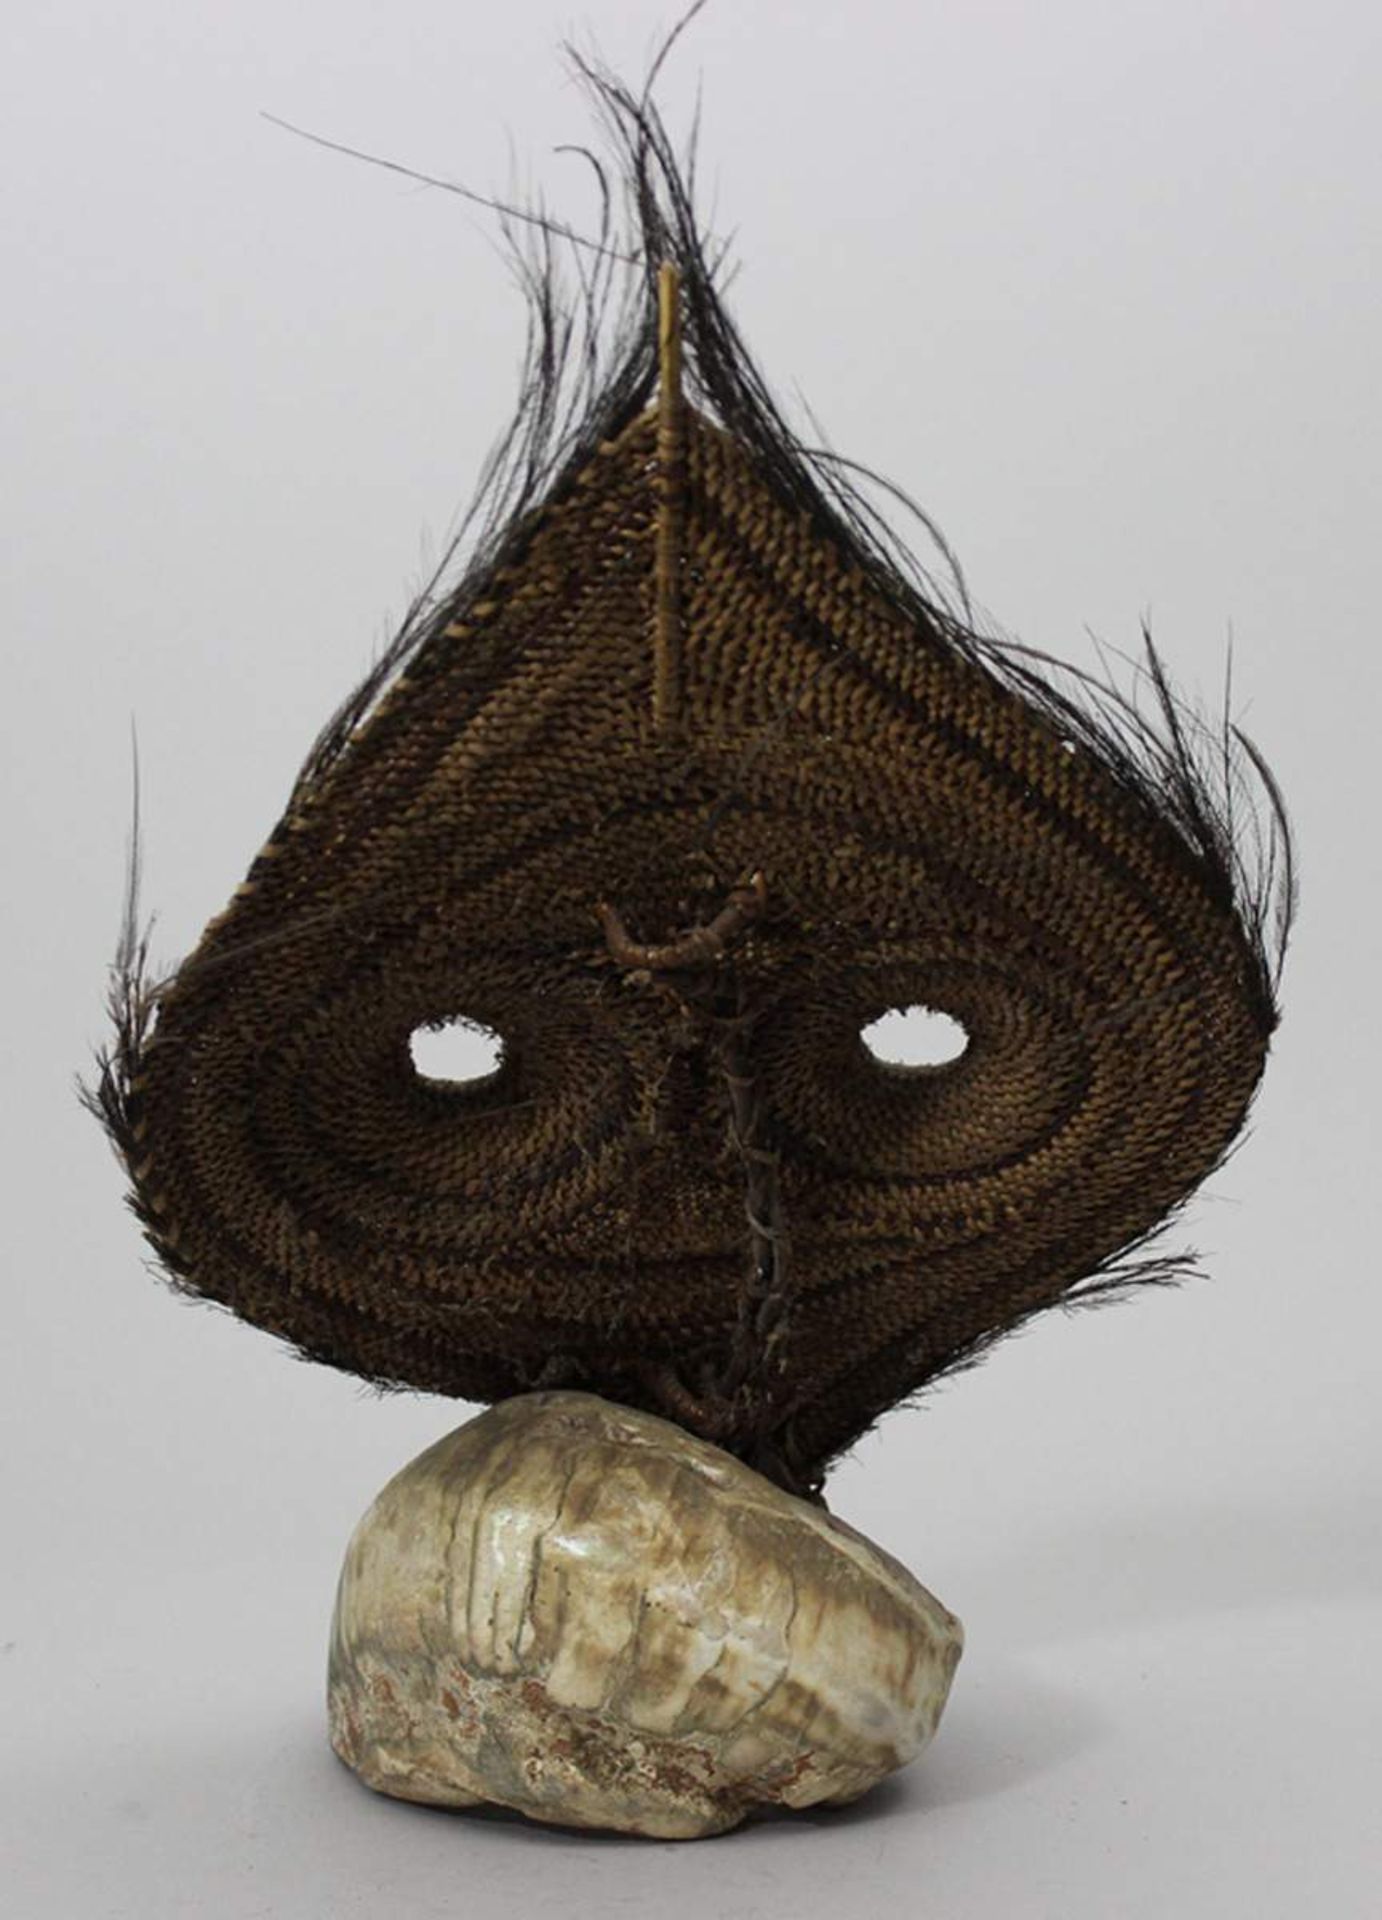 Humbuli-Maske - Talipun, Yangovu.Rattangeflecht, Muschel, Fasern, Kasuarfedern und Pigmente. Flaches - Bild 2 aus 2